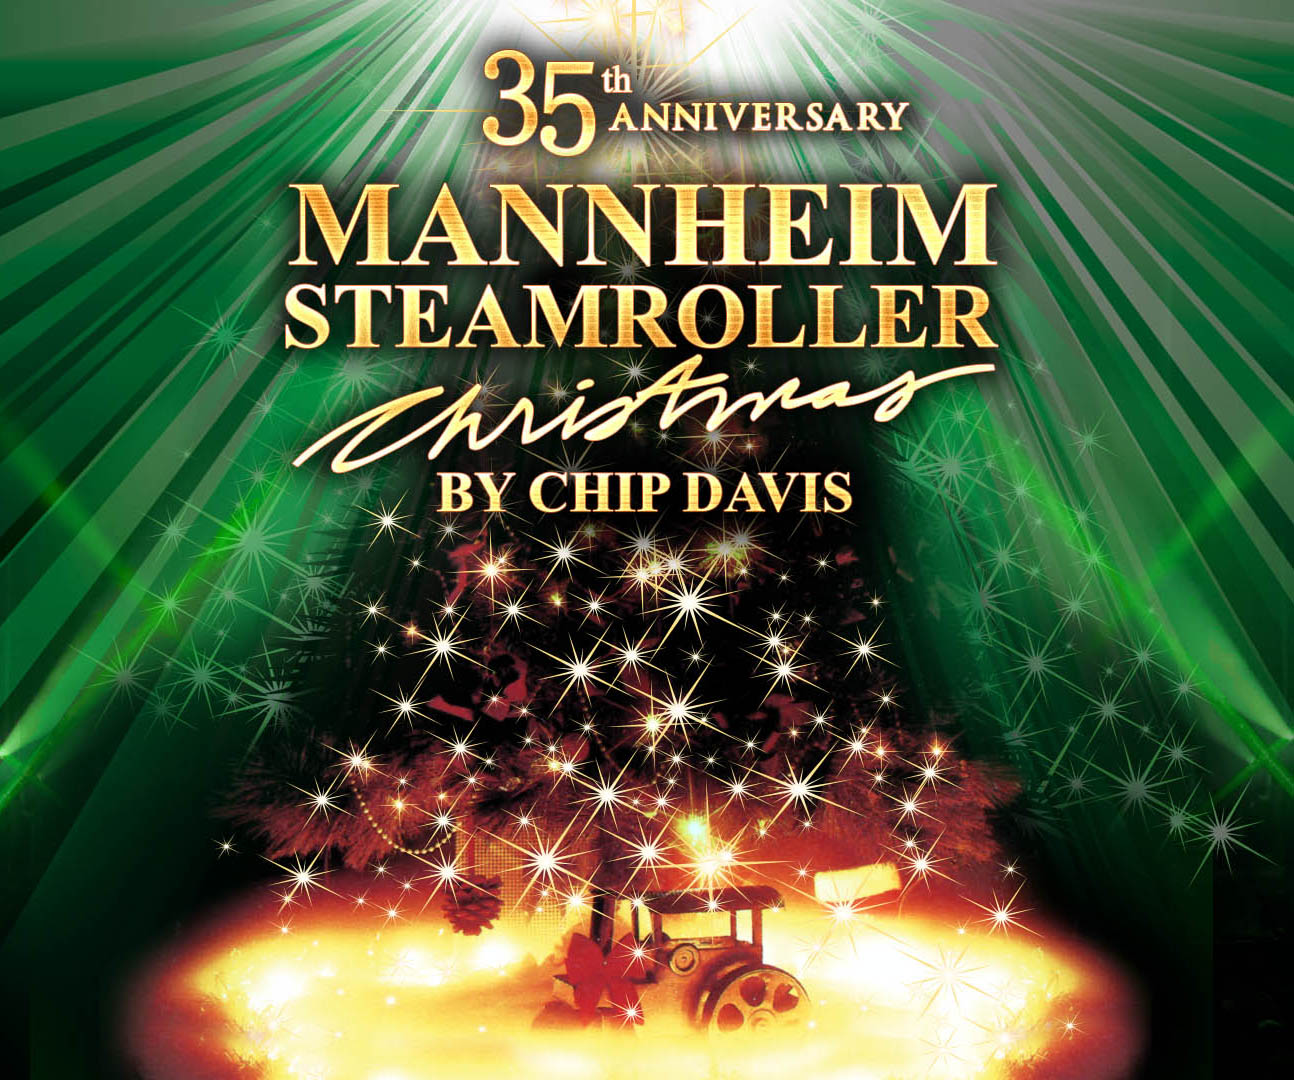 Mannheim steamroller 2020 tour dates